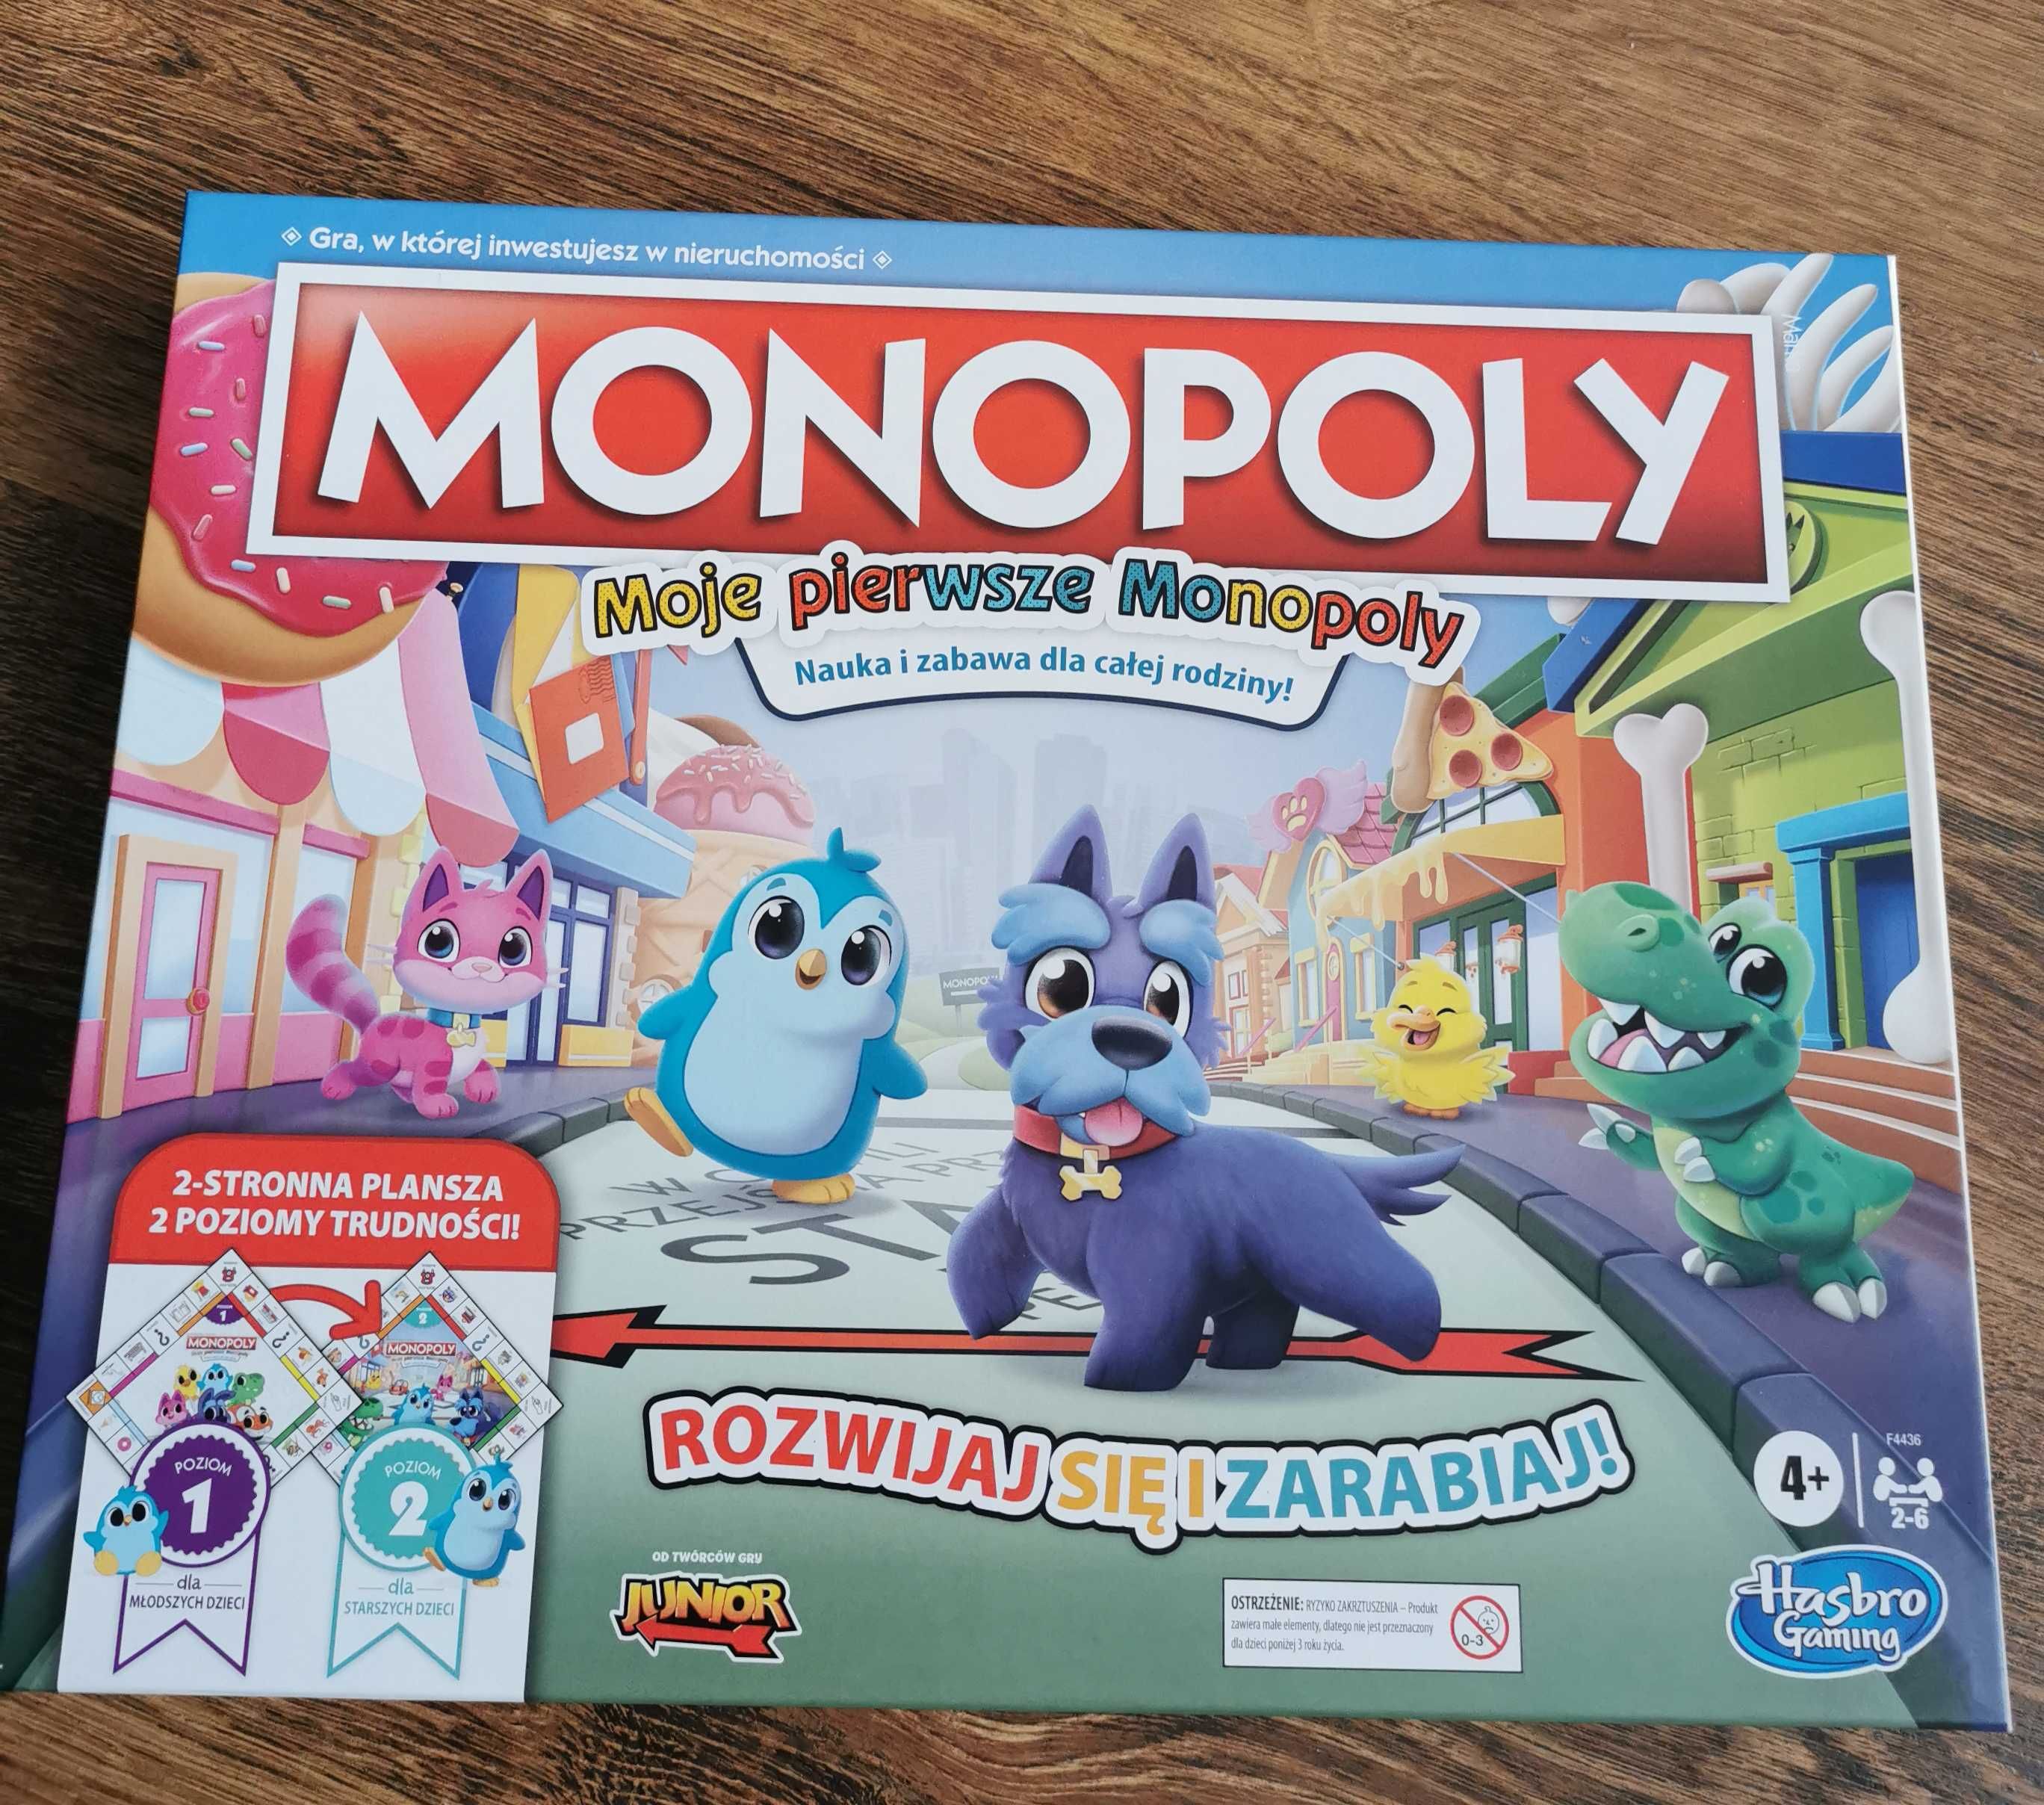 Hasbro Gra Monopoly 2 stronna plansza 2 poziomy trudności Nowa